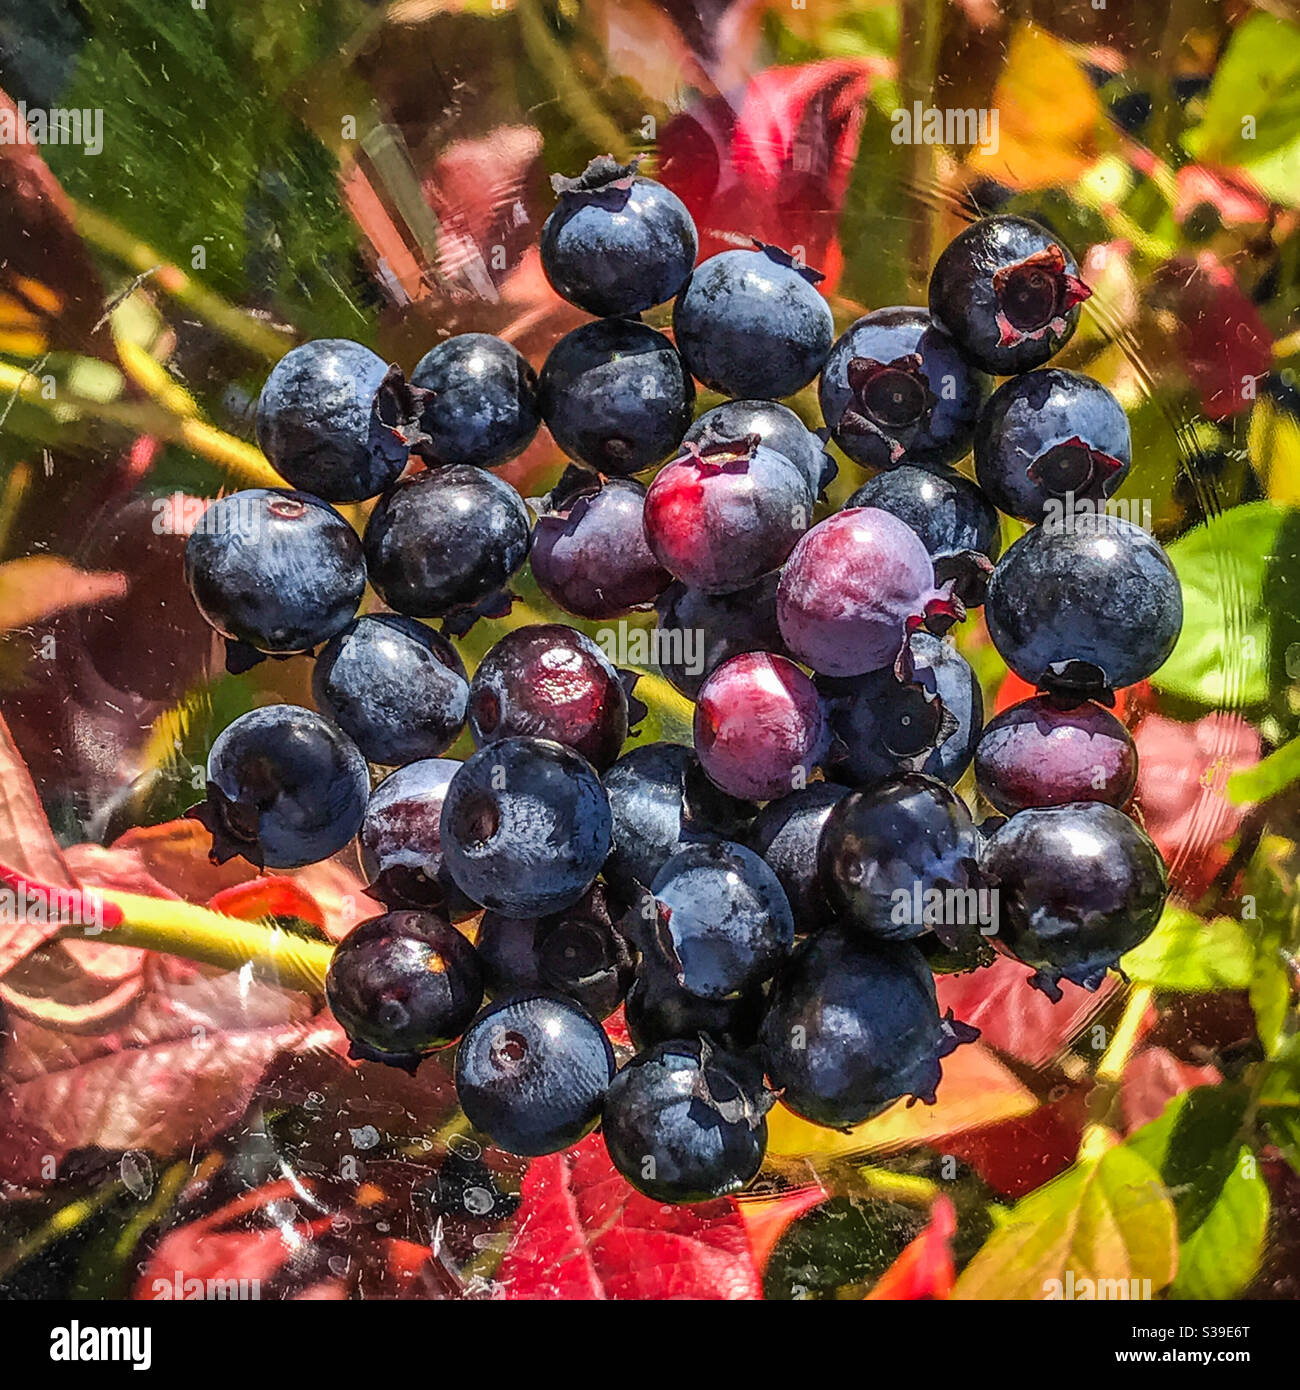 Wonky blueberries on autumnal blueberry bush background Stock Photo